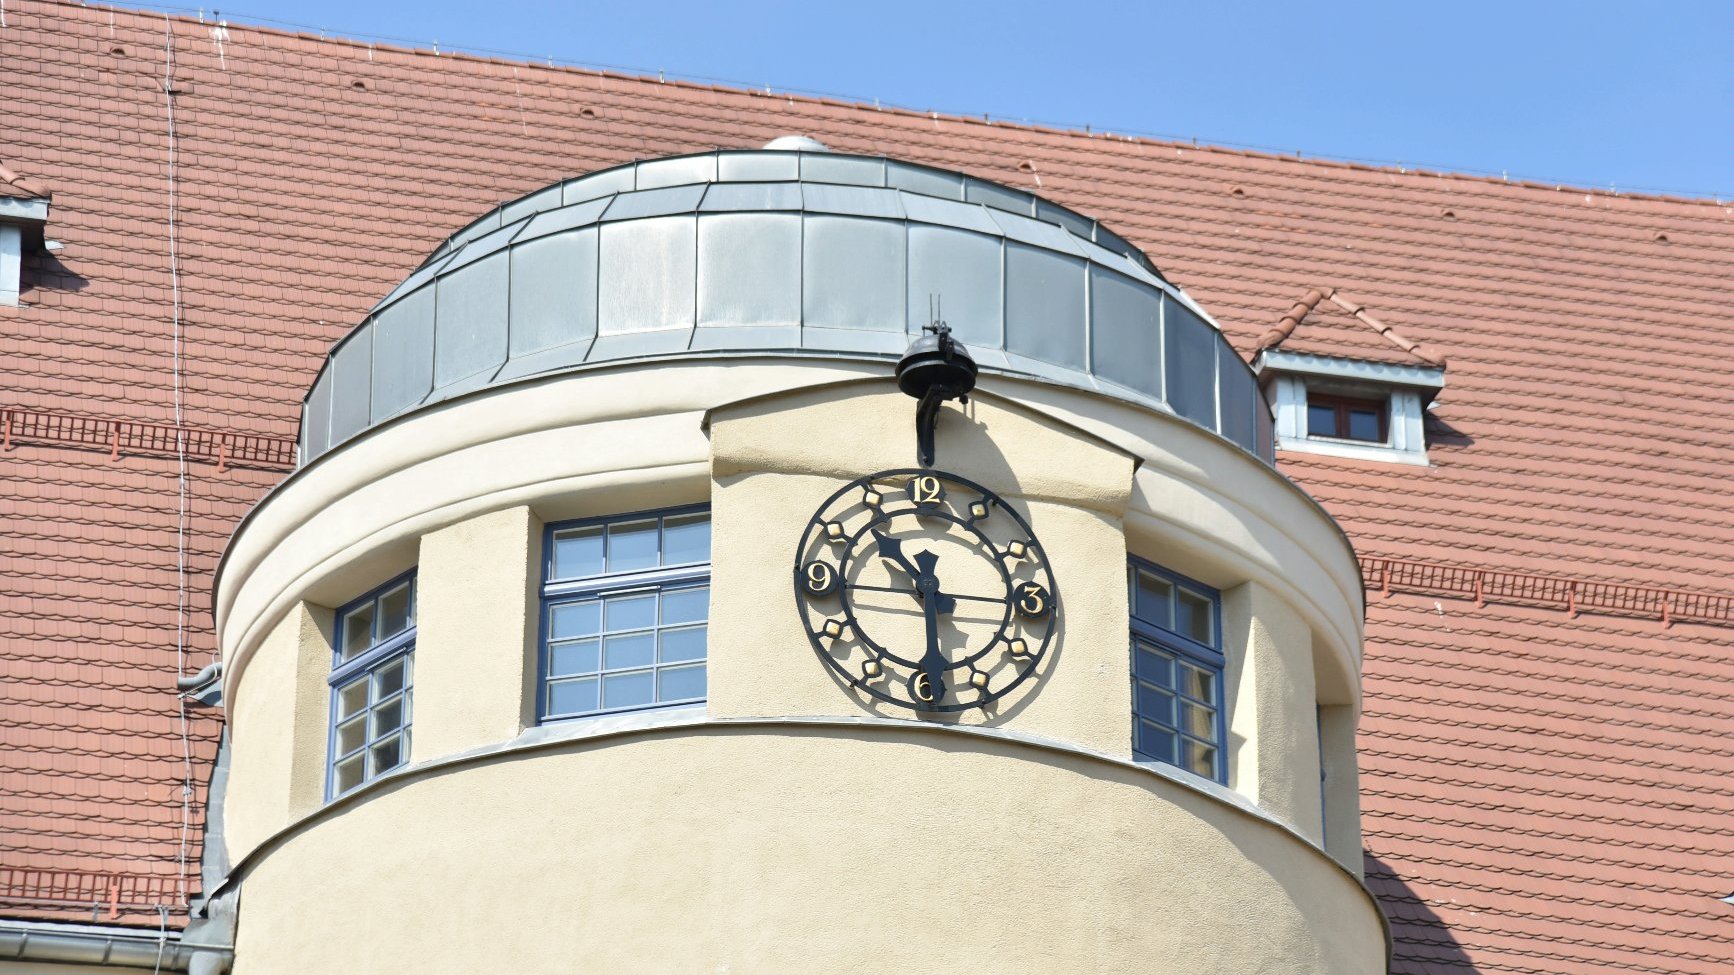 Zdjęcie przedstawia zegar na budynku szkoły.